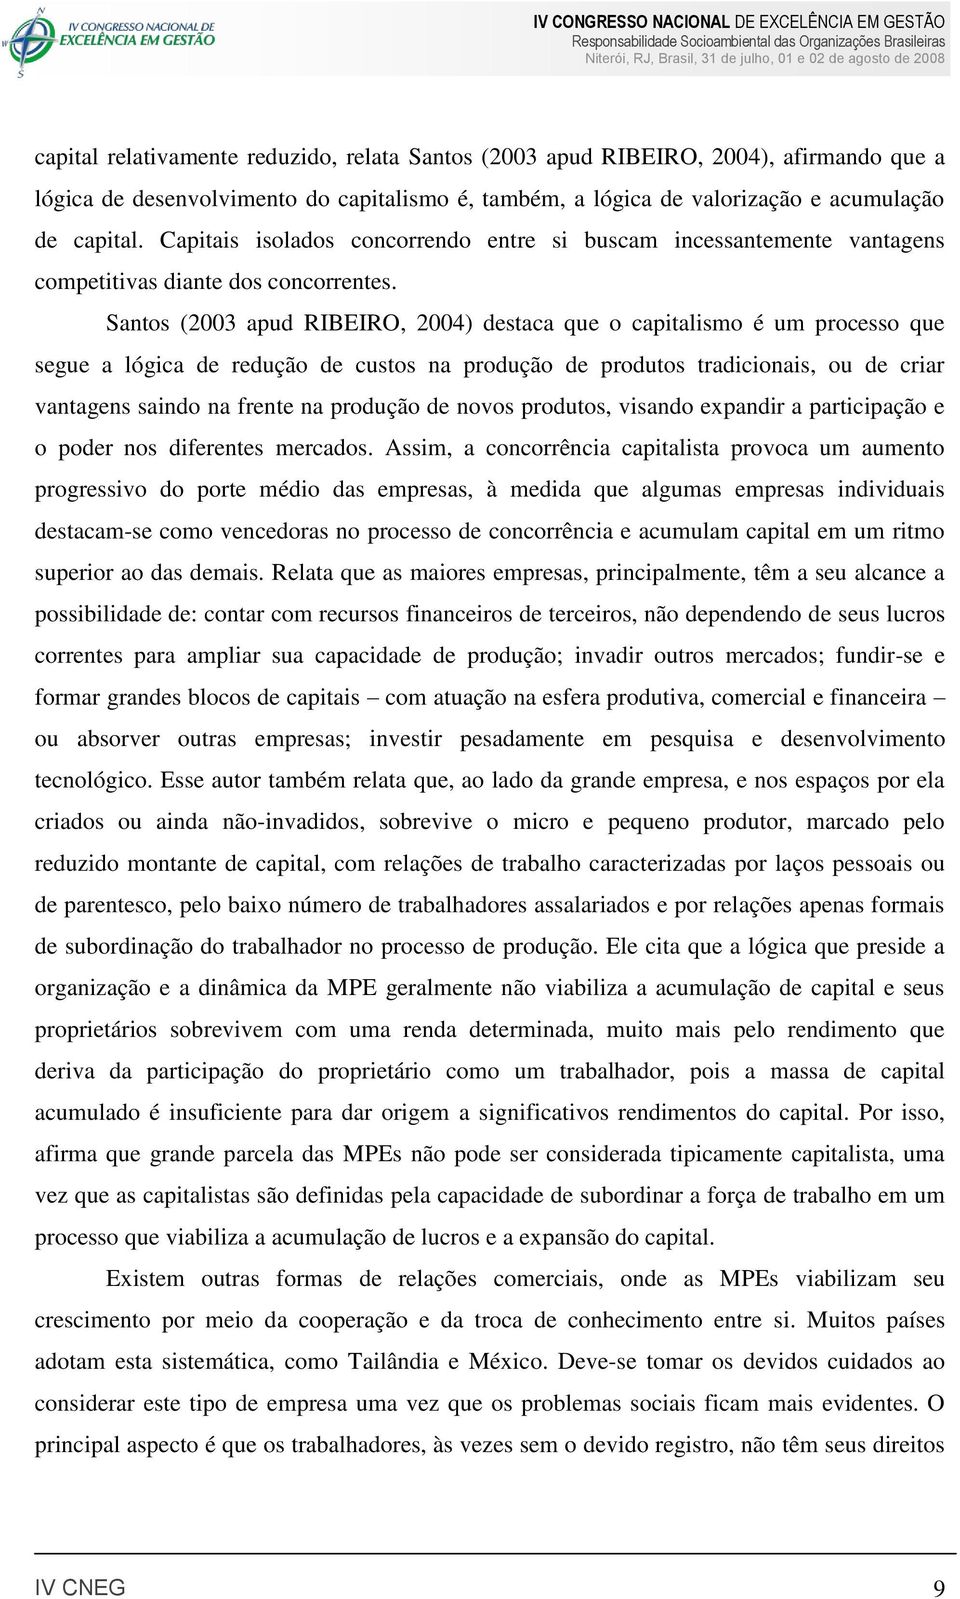 Santos (2003 apud RIBEIRO, 2004) destaca que o capitalismo é um processo que segue a lógica de redução de custos na produção de produtos tradicionais, ou de criar vantagens saindo na frente na